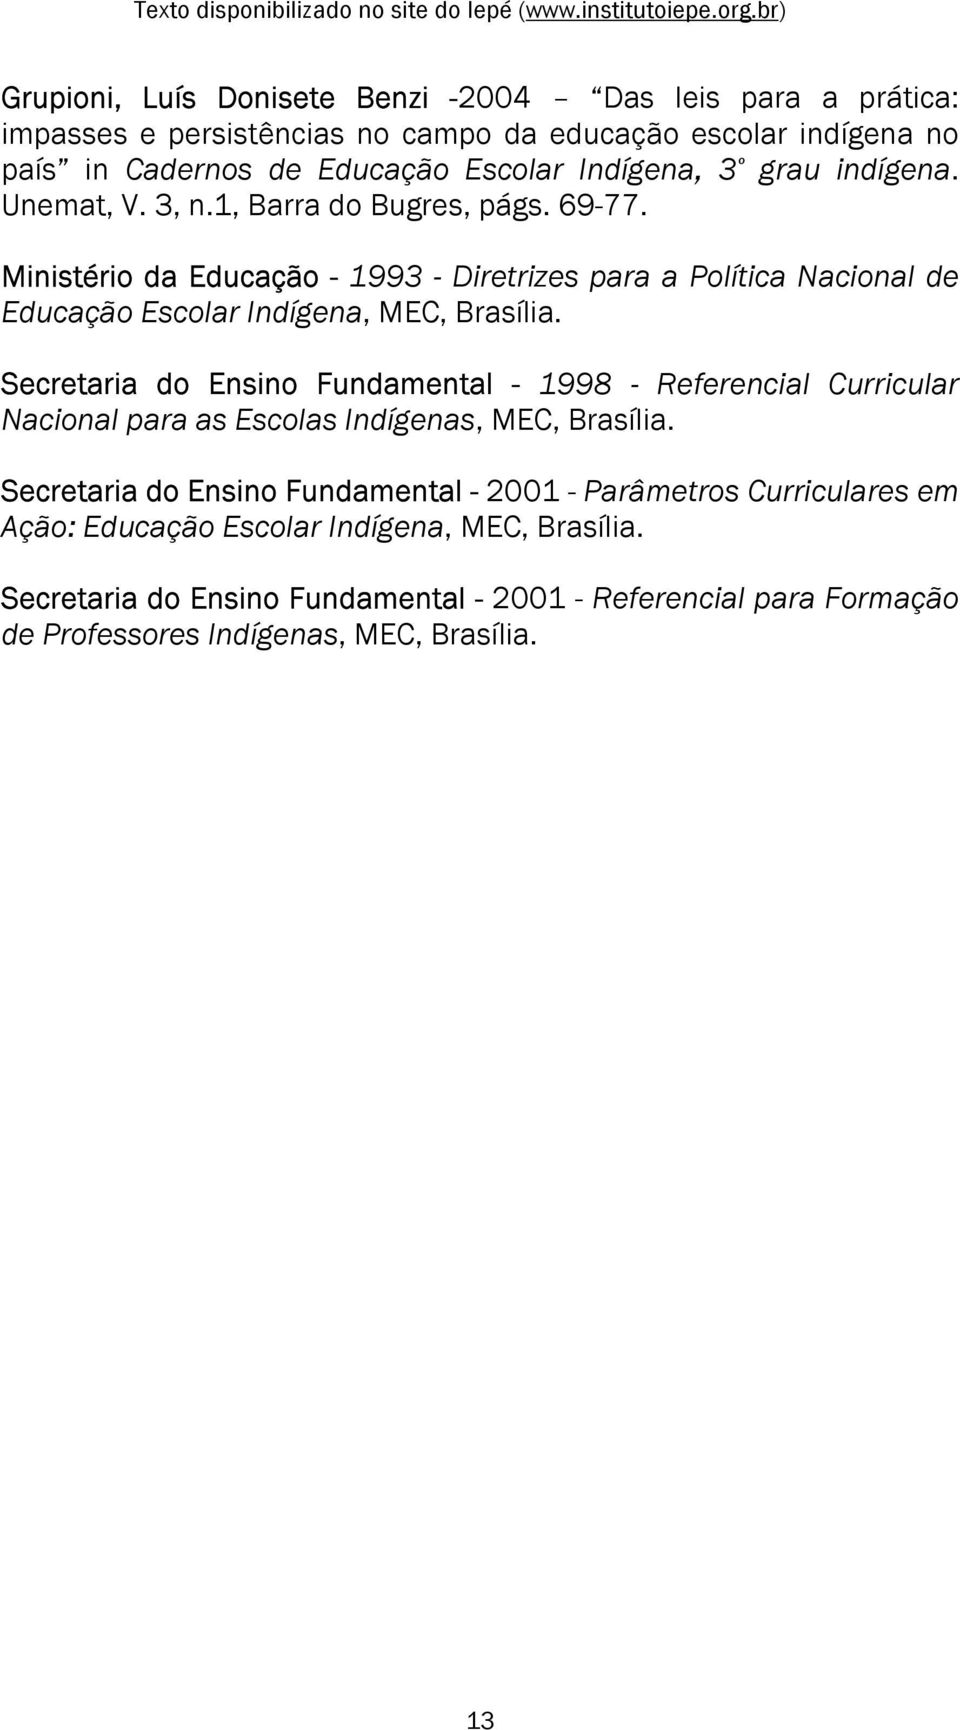 Ministério da Educação - 1993 - Diretrizes para a Política Nacional de Educação Escolar Indígena, MEC, Brasília.